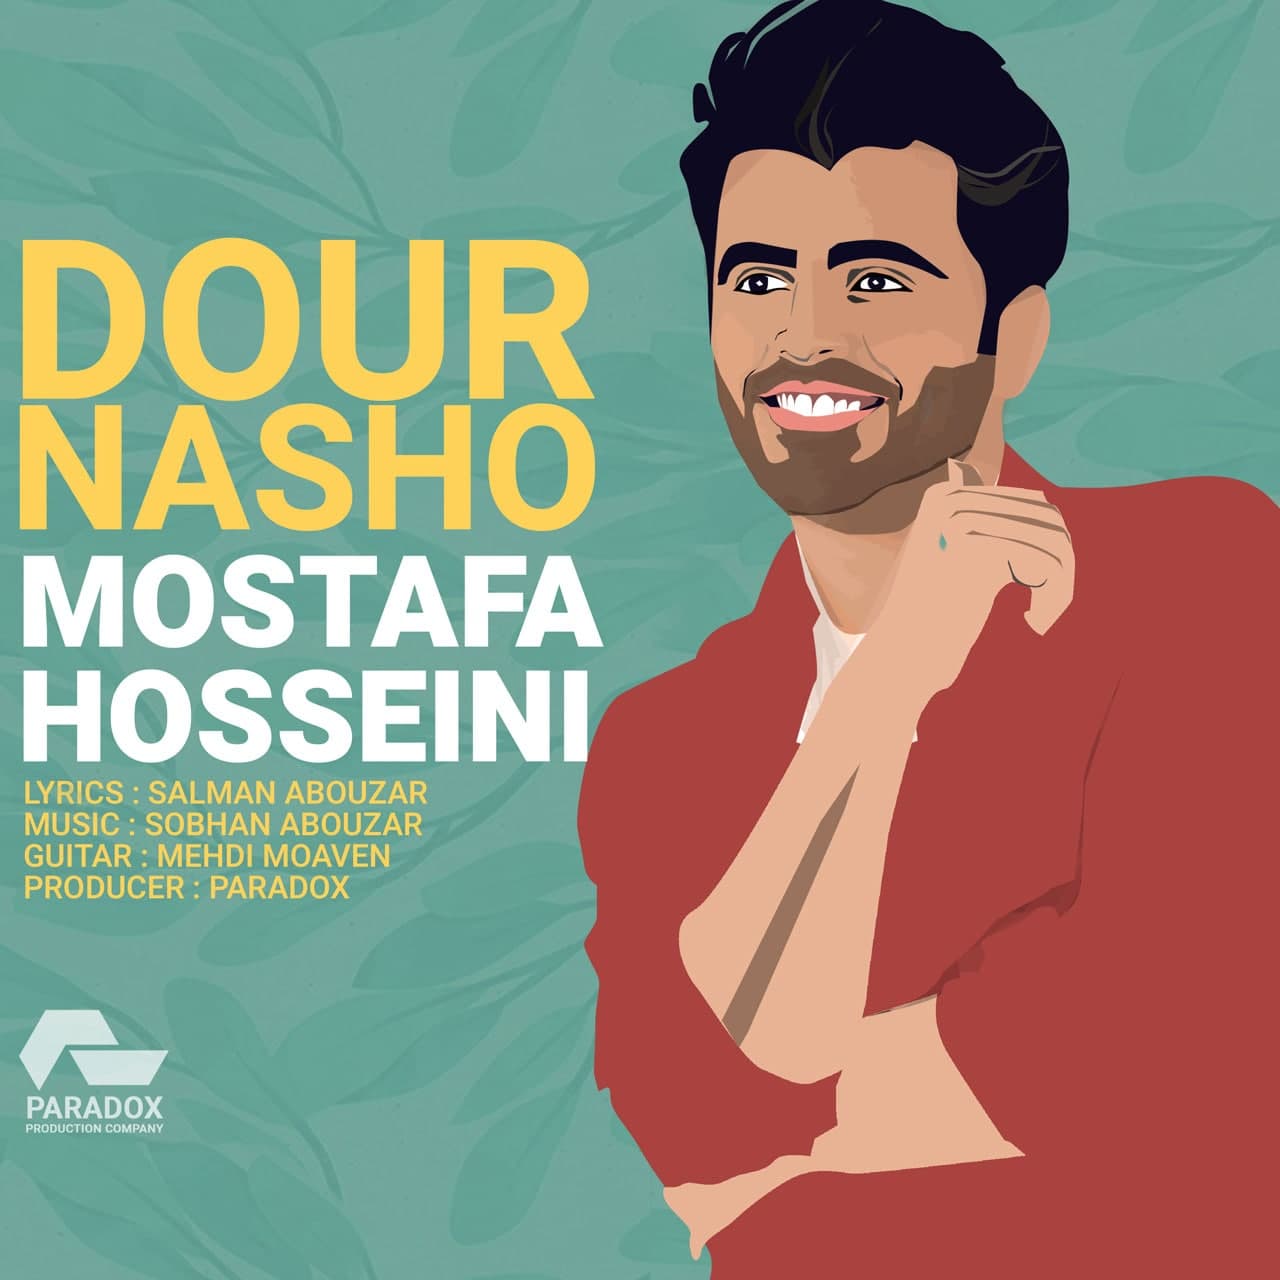 دانلود آهنگ جدید دور نشو از مصطفی حسینی همراه متن آهنگ